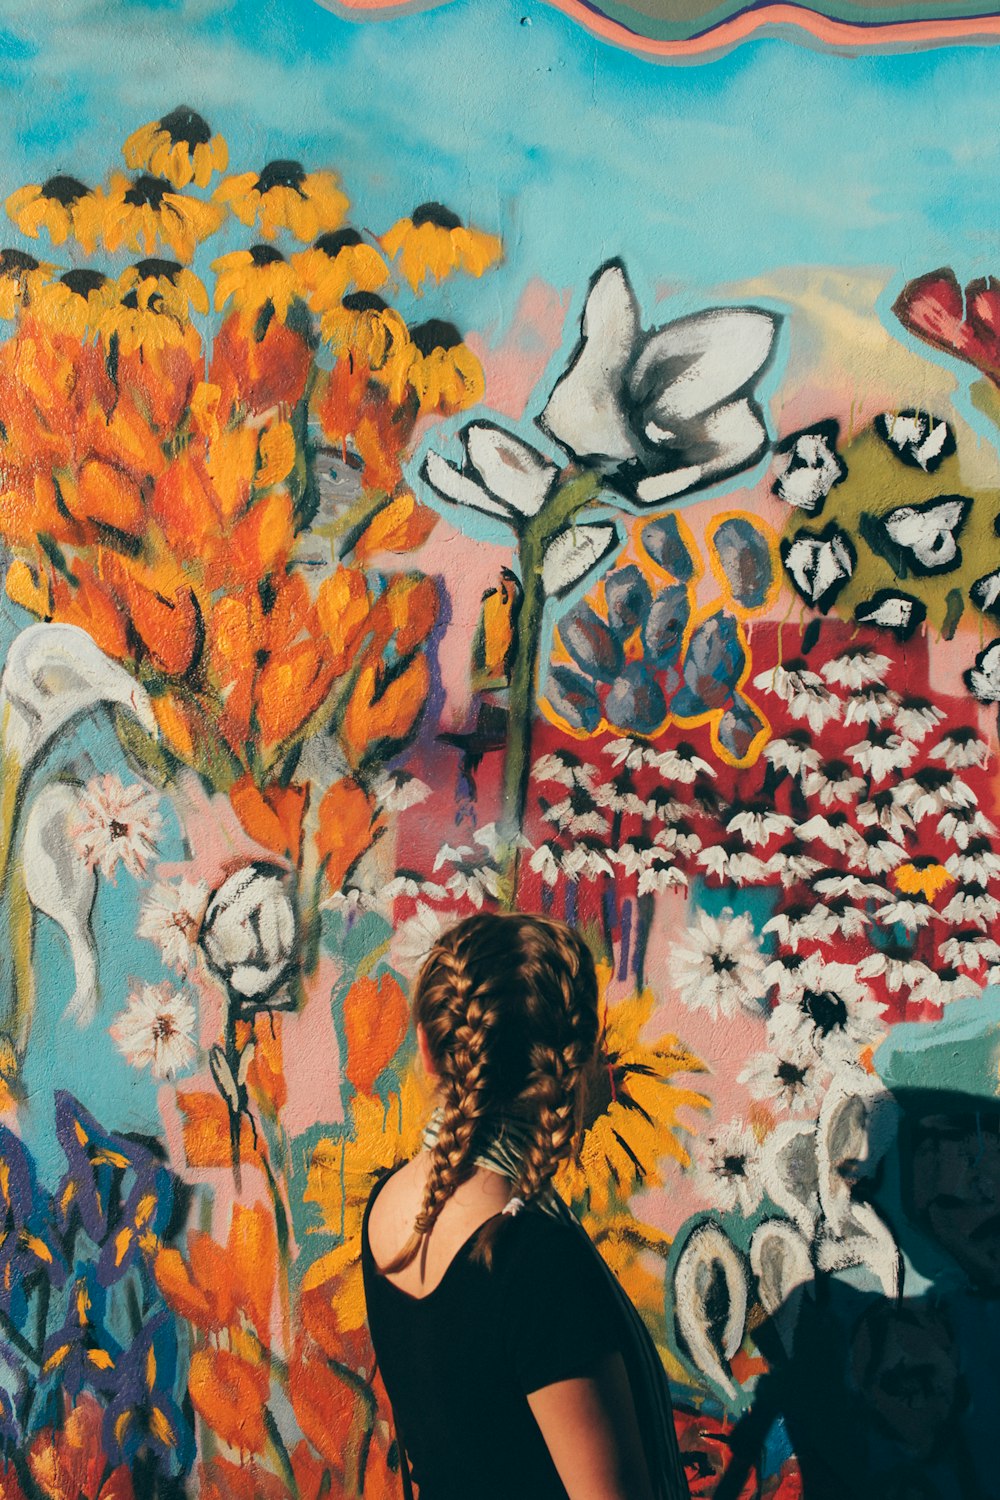 Frau blickt vor floraler Graffiti-Wand